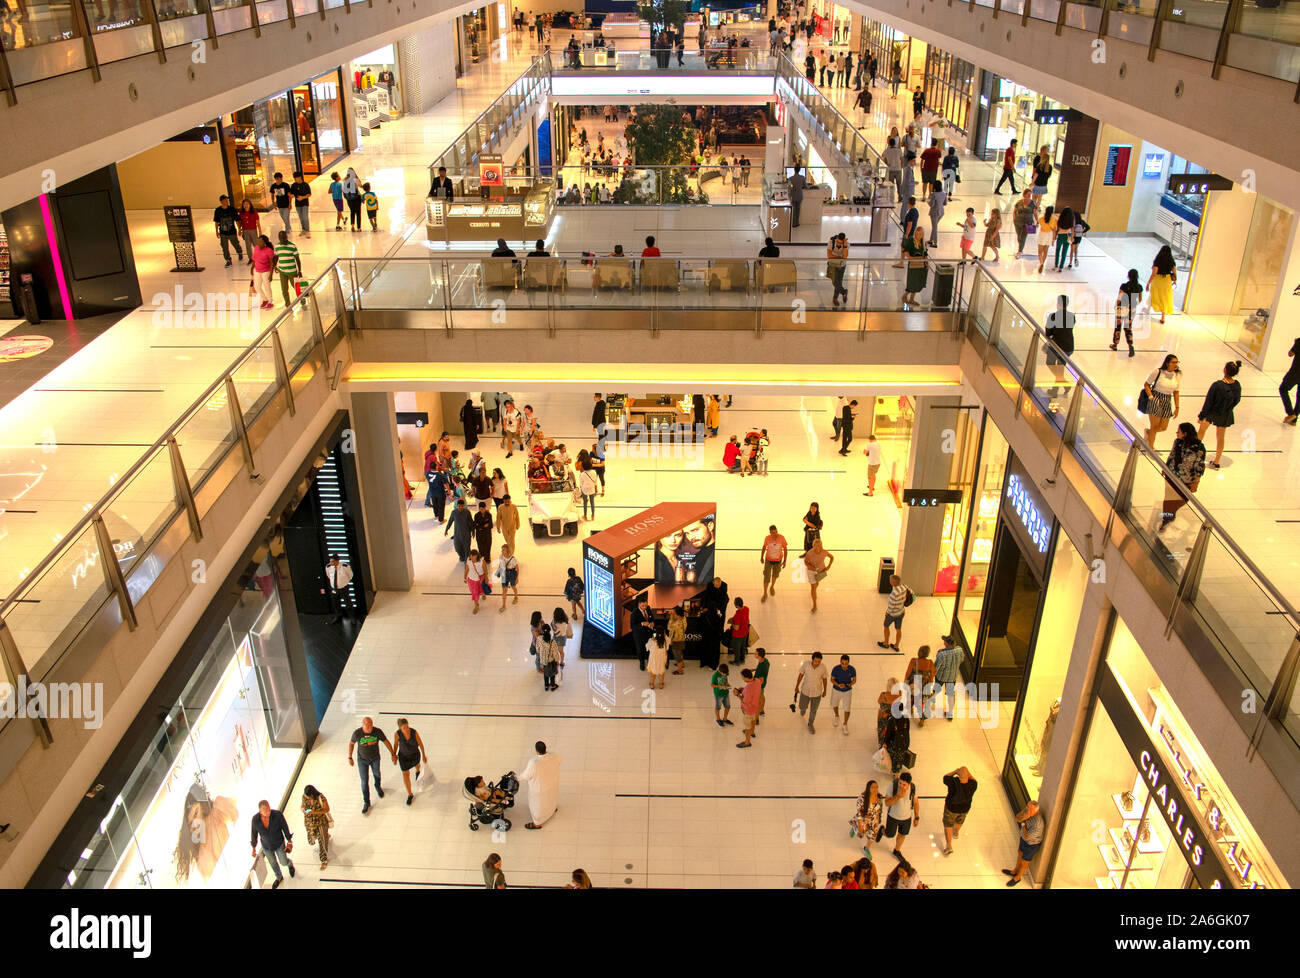 Dubaï / Emirats Arabes Unis - le 19 octobre 2019 : le plus grand centre commercial du monde. Foule dans le centre commercial de Dubaï. Clients dans le centre commercial de Dubaï. Haut vew. Banque D'Images